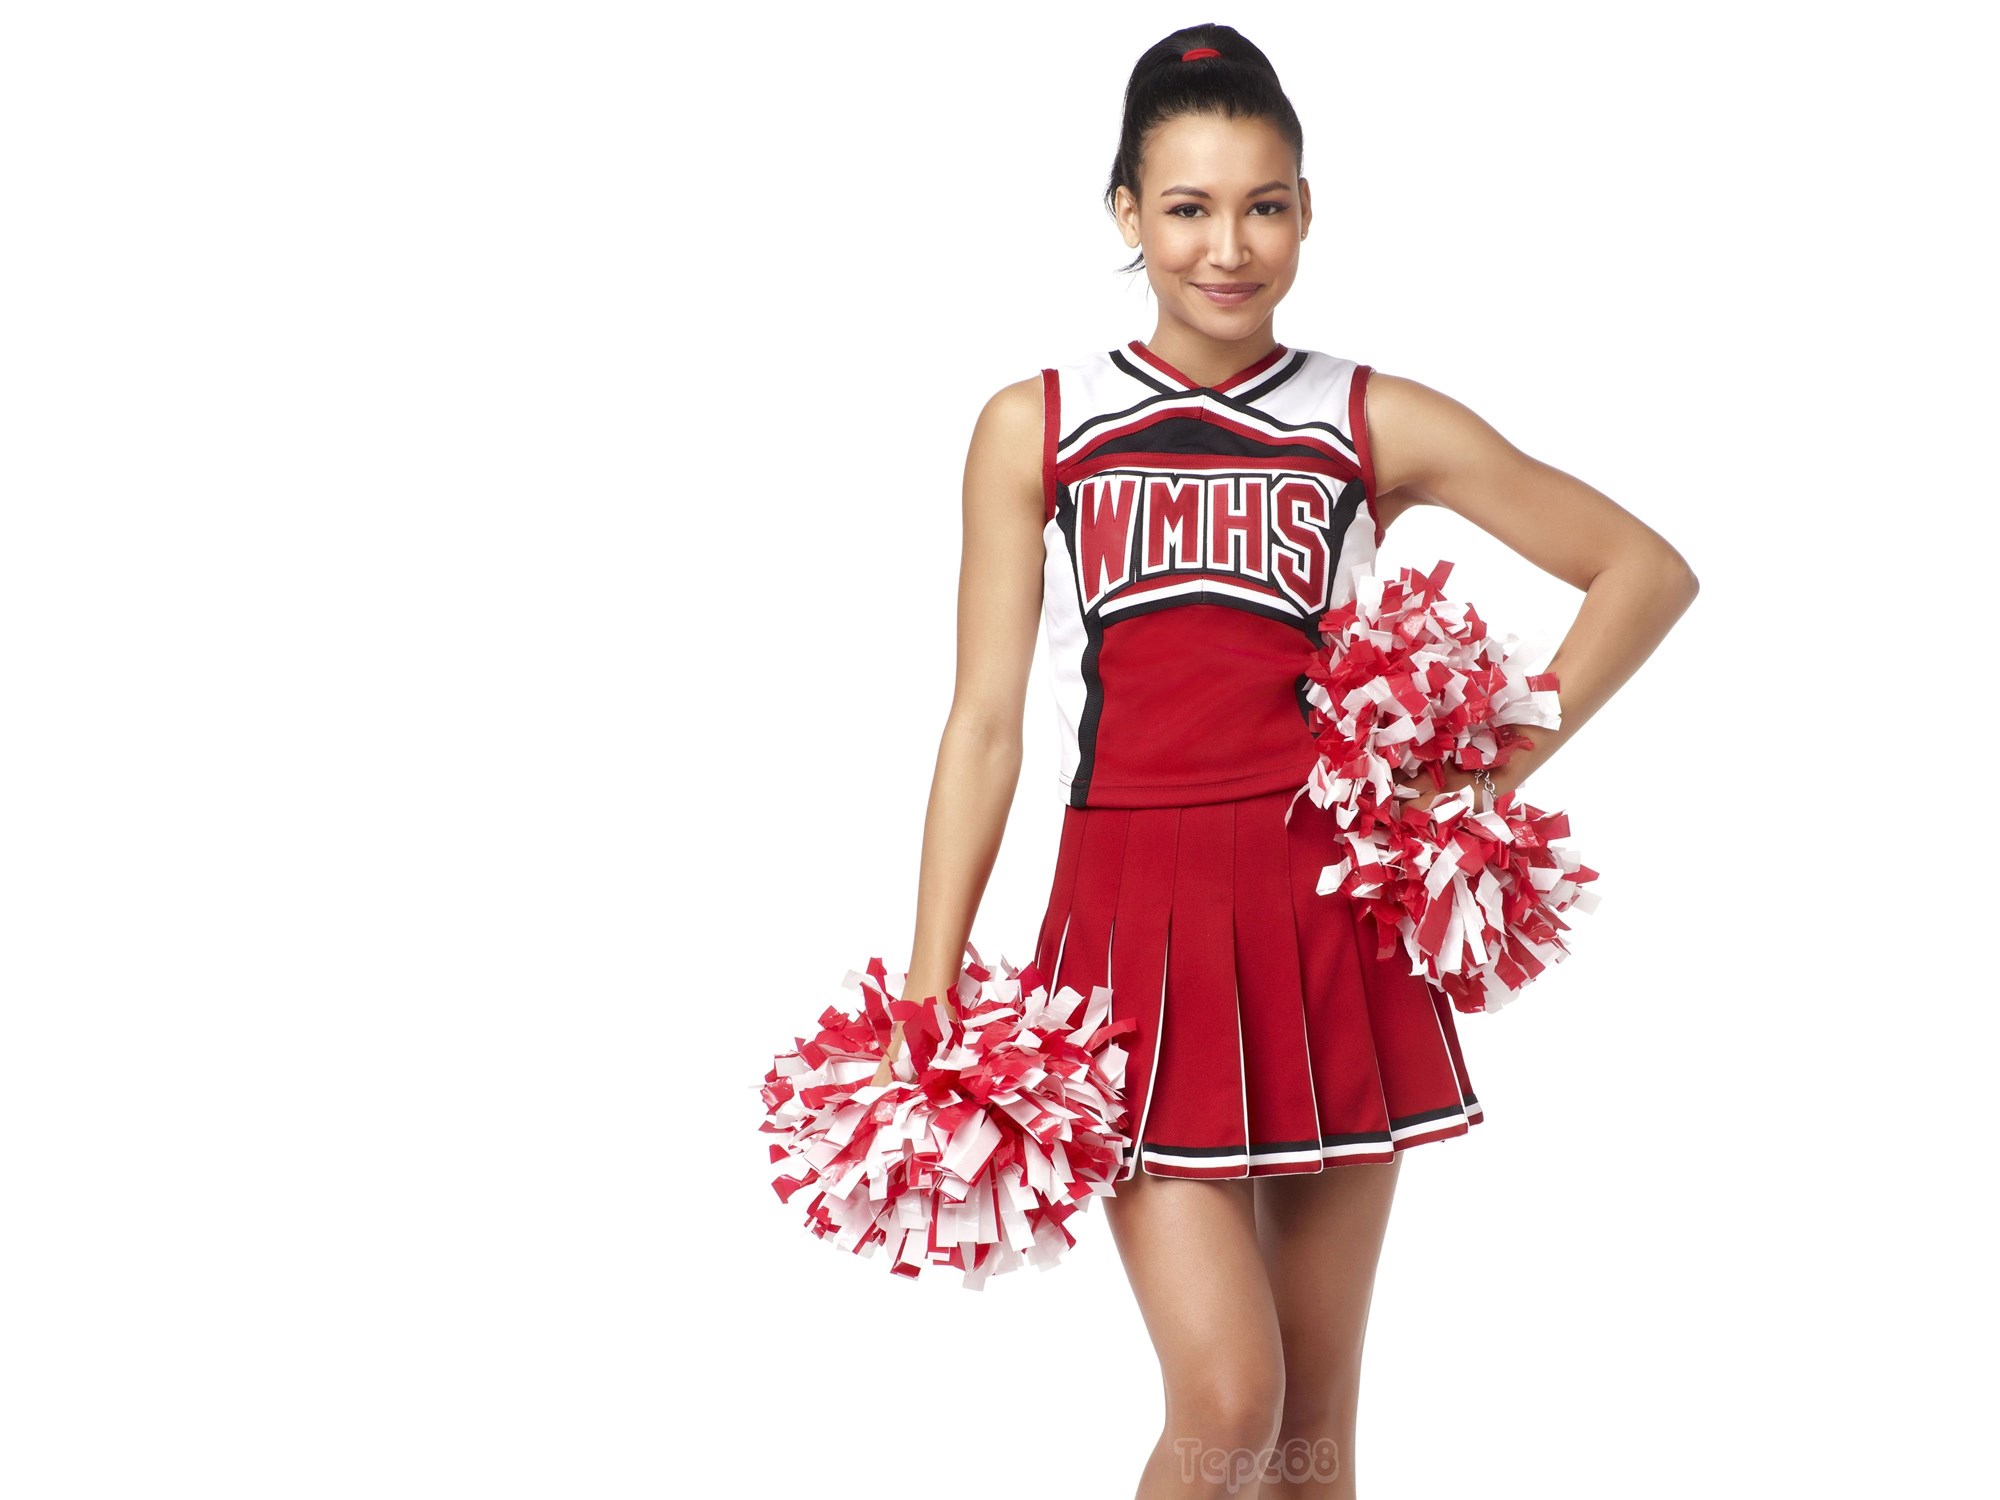 Download Cheerleader Wallpapers Wallpapers Cave Fullscreen Standart 4:3 200...